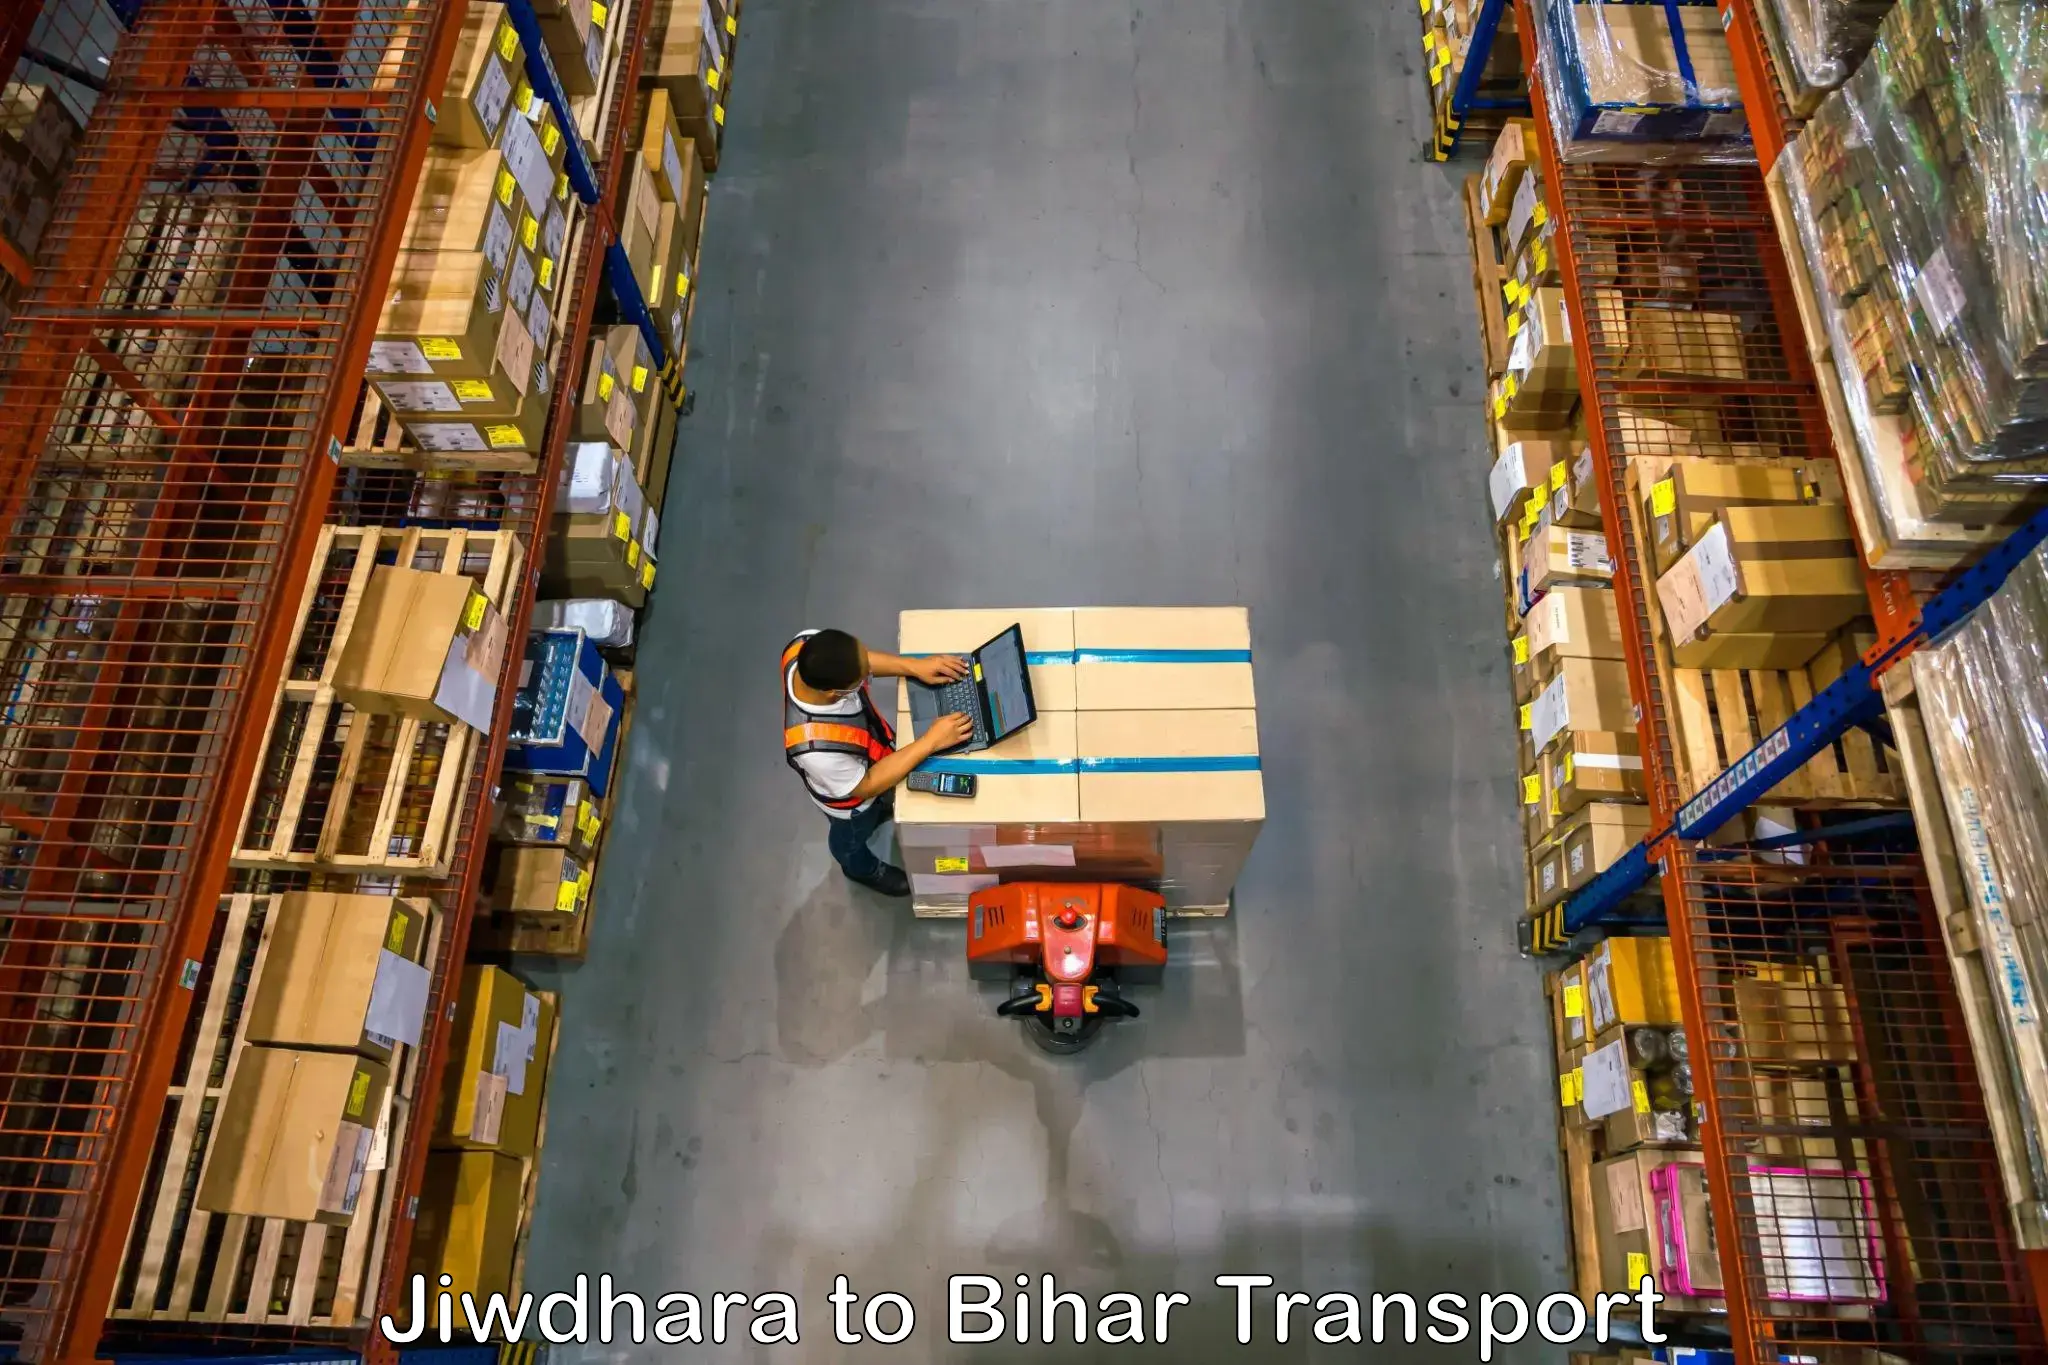 Vehicle parcel service Jiwdhara to Mairwa